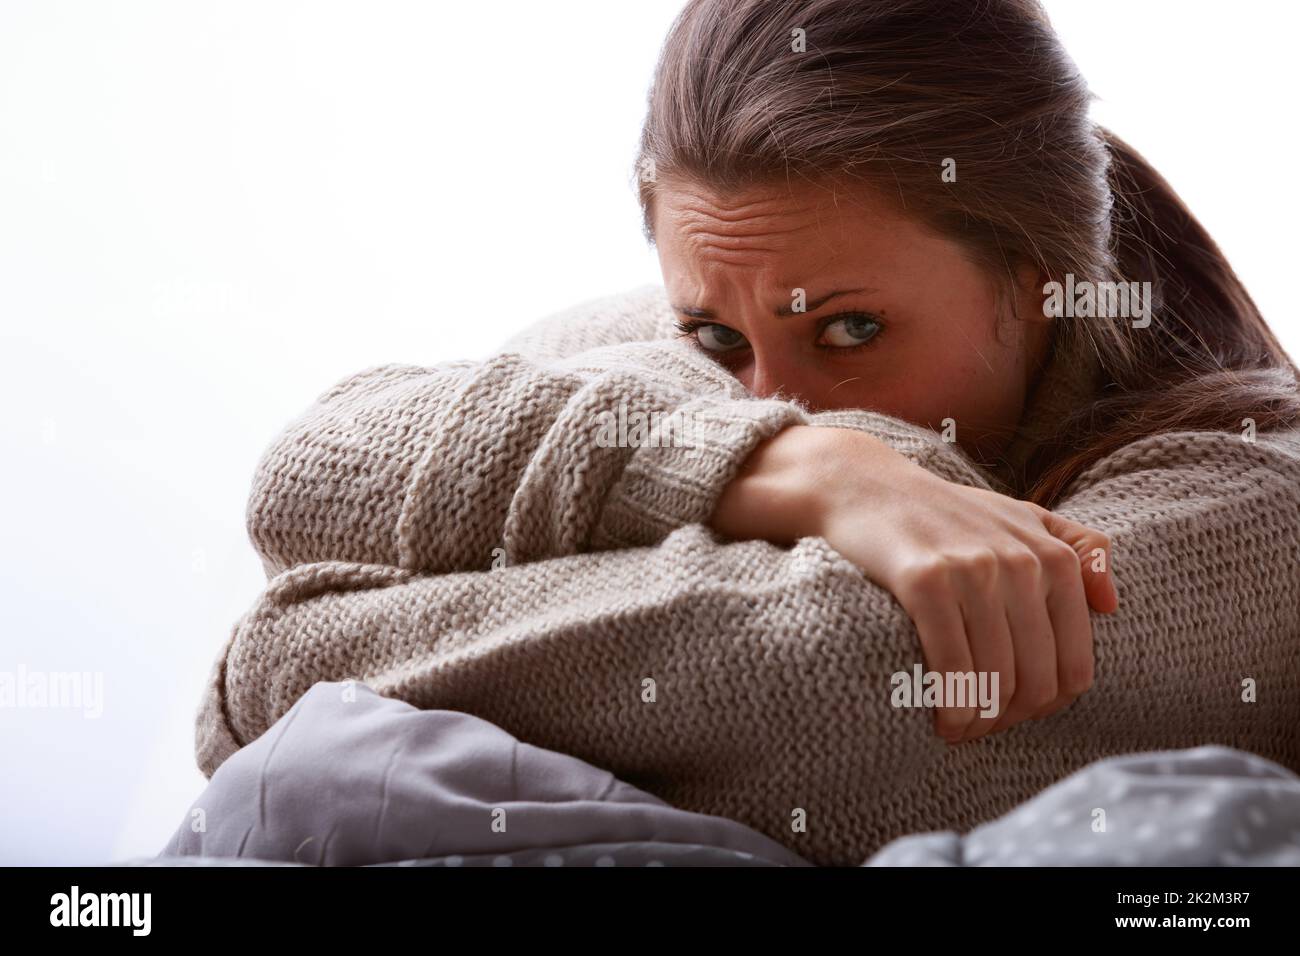 Eine gestörte oder kranke junge Frau, die ihr Gesicht im Arm versteckt Stockfoto